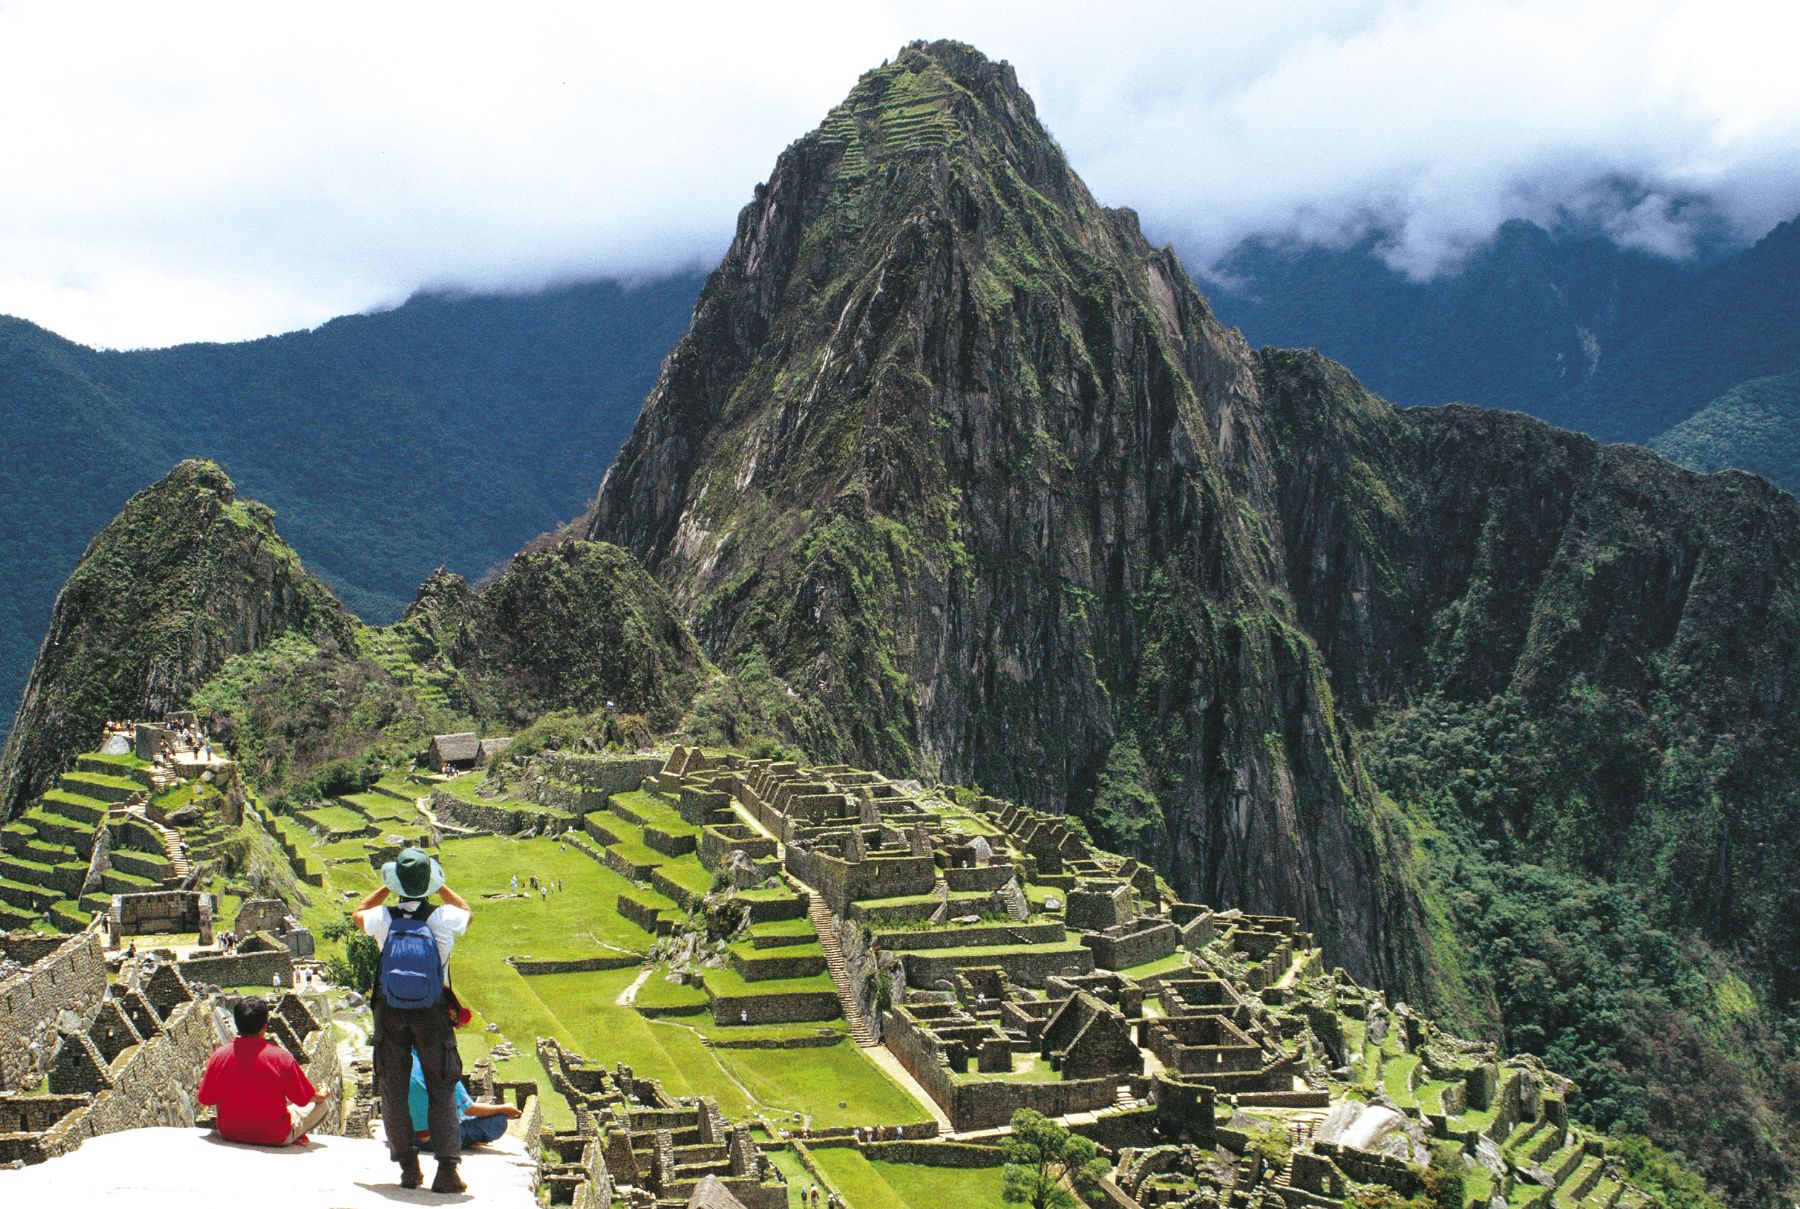 Machu Picchu, located about 80 km (50 miles) northwest of Peru